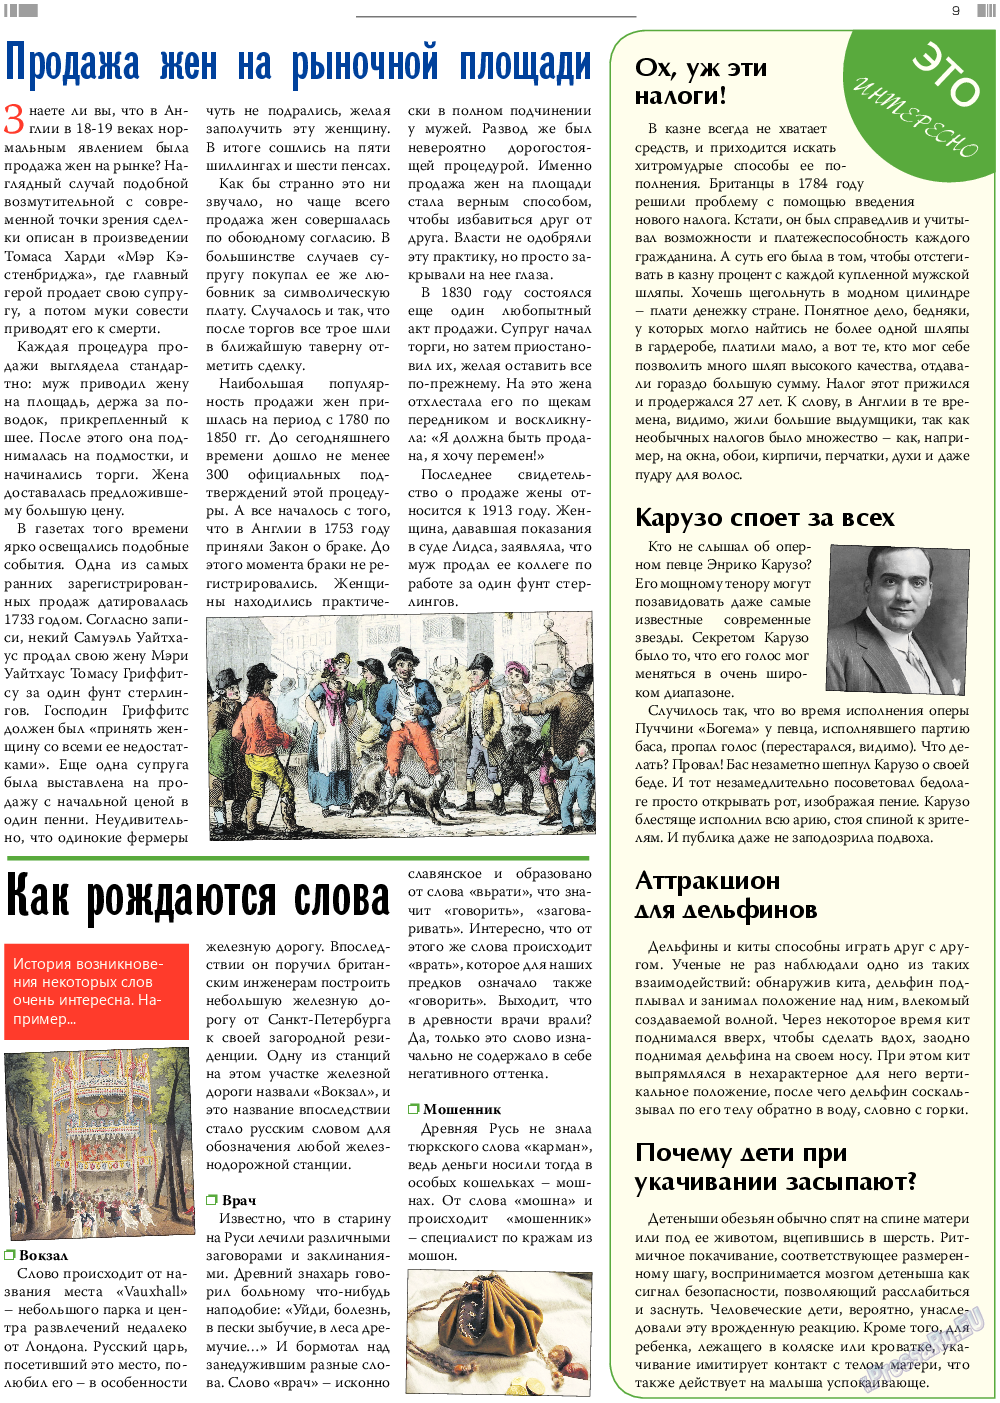 Анонс, газета. 2017 №8 стр.9